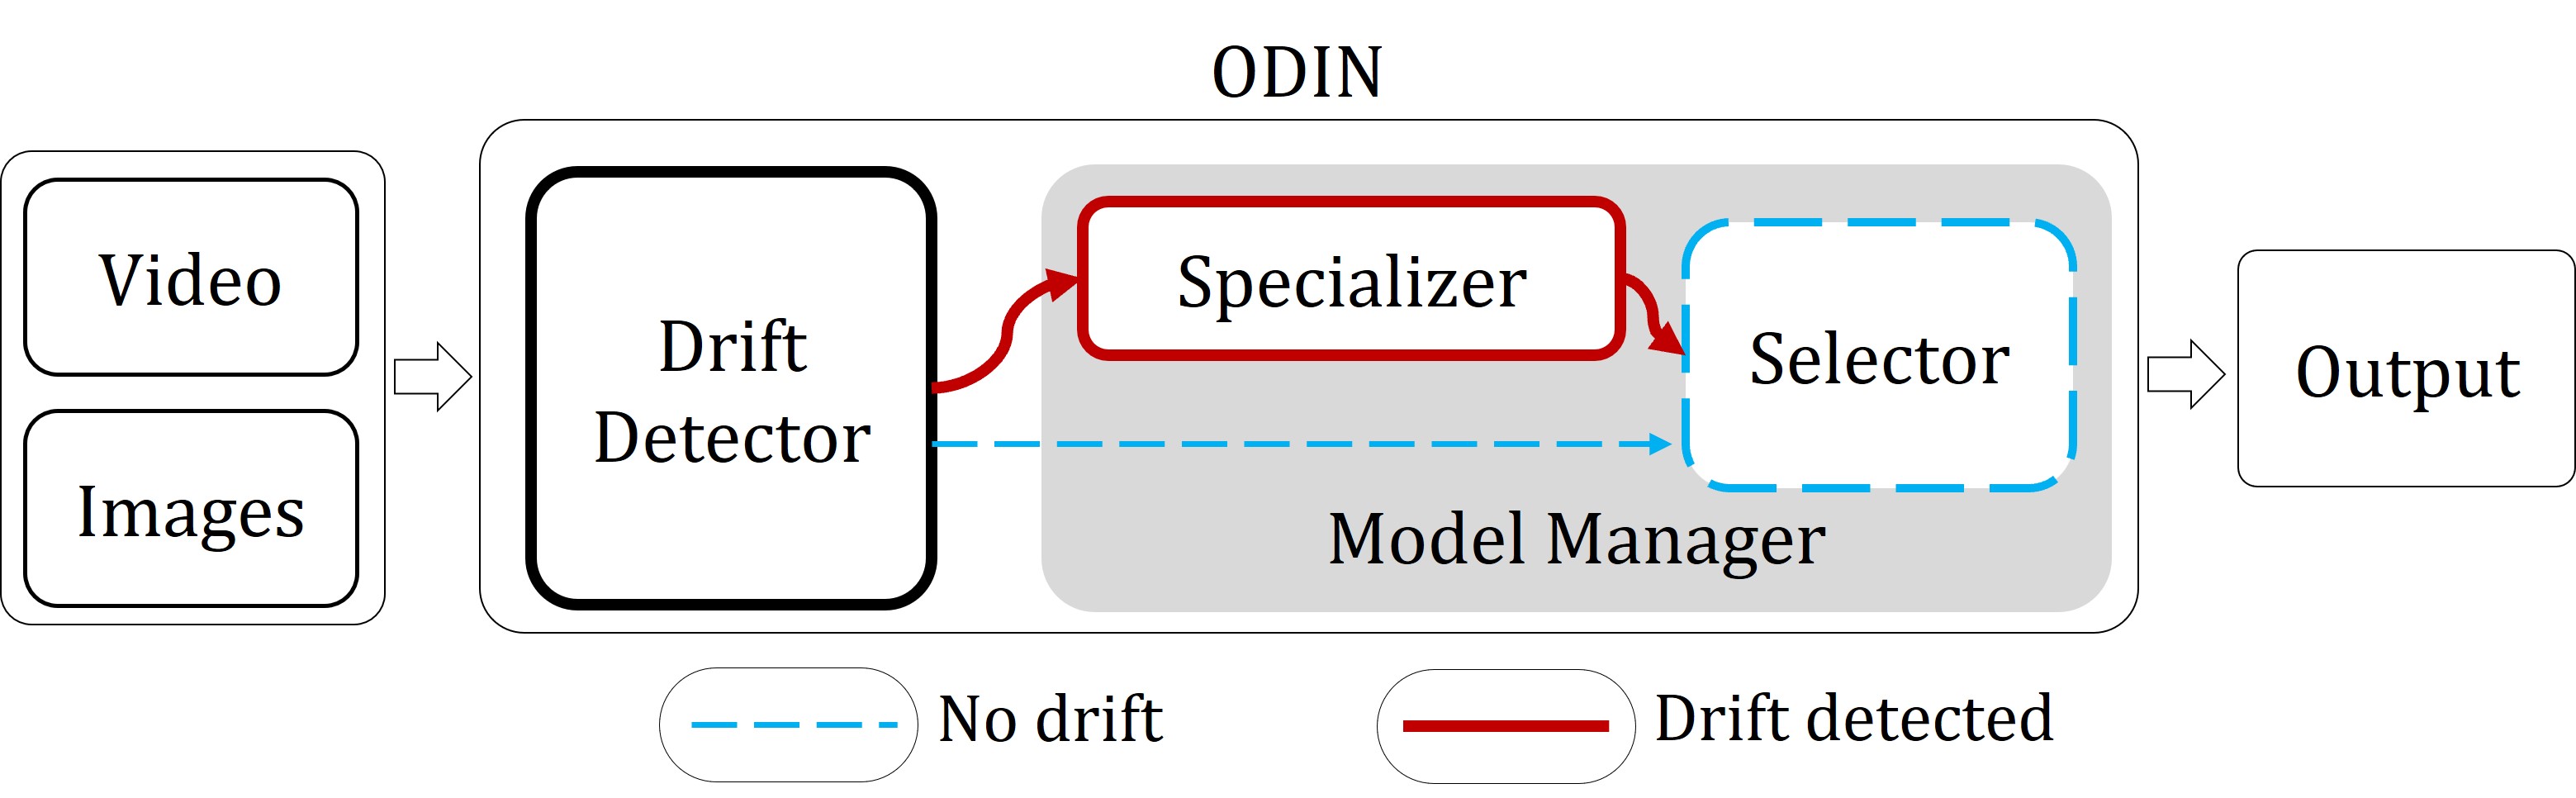 ODIN System Architecture